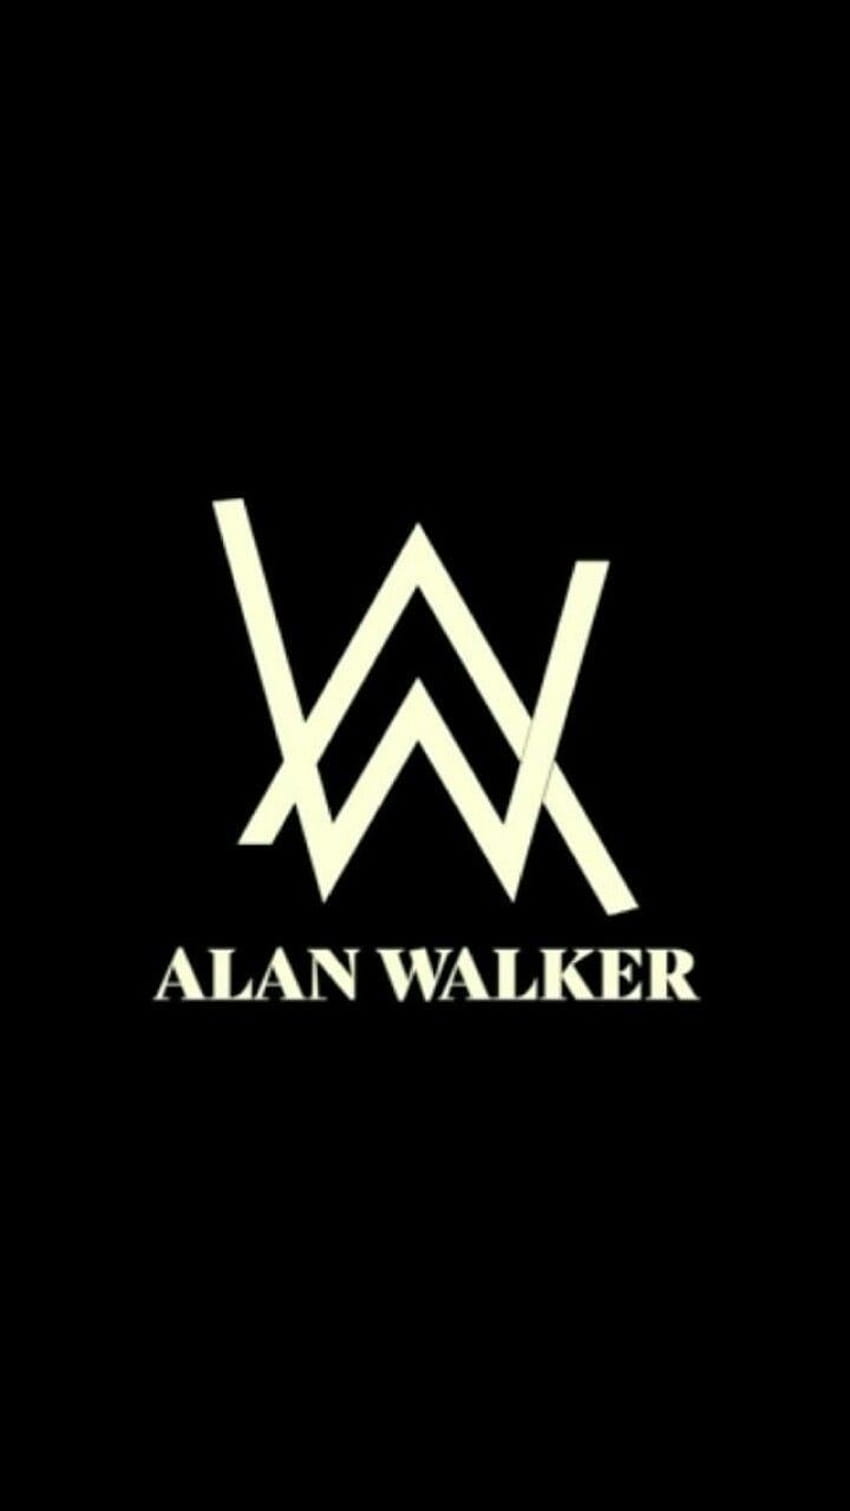 Alan Walker Musisi Dj Walker Terkenal Alan Walker Walker Logo, K-391 wallpaper ponsel HD